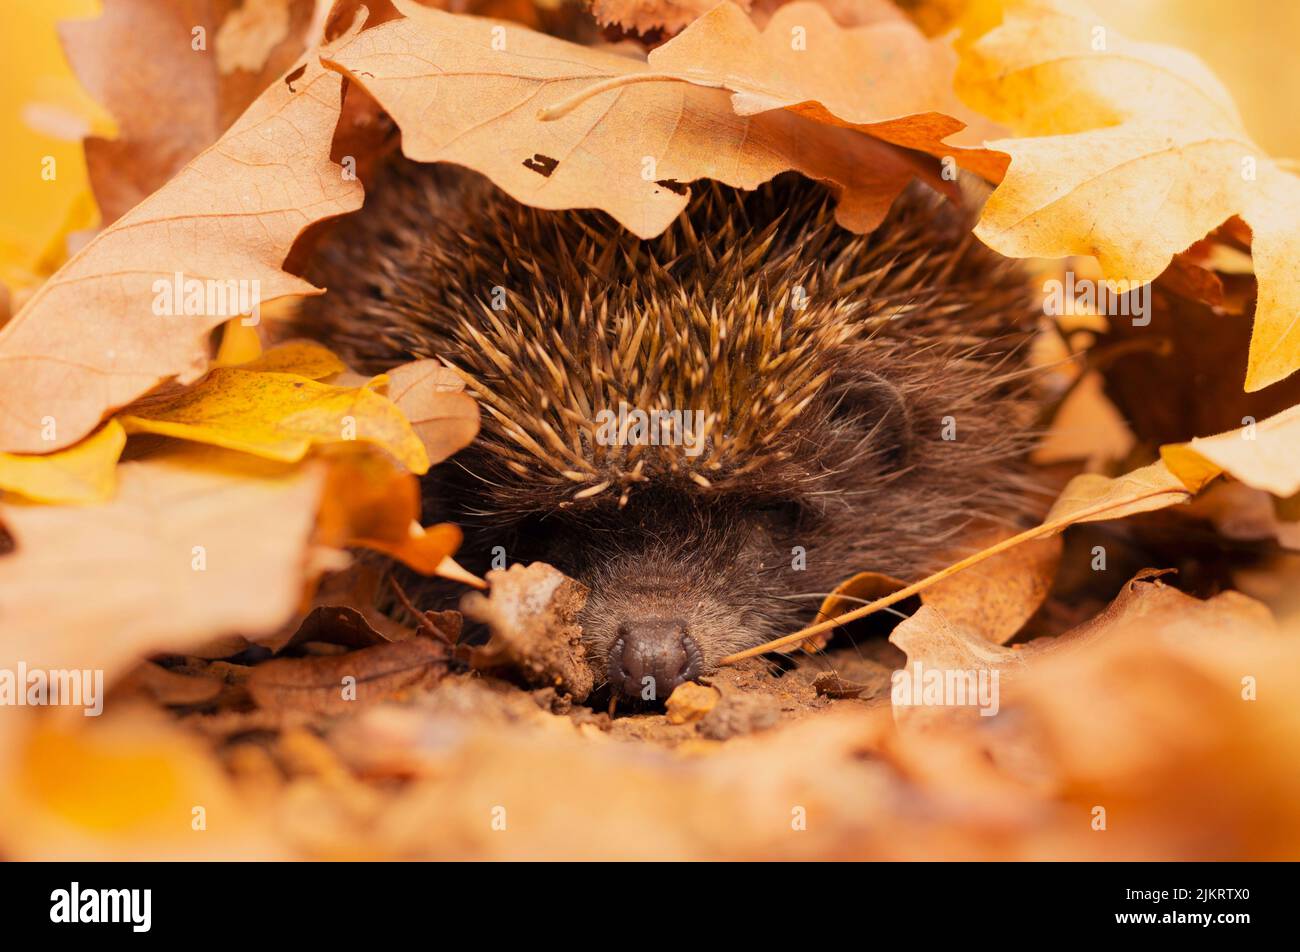 Immagine dettagliata di hedgehog (Erinaceus roumanicus) di orlatura del suolo boschivo ricoperto di foglie dai colori sorprendenti. Foto Stock